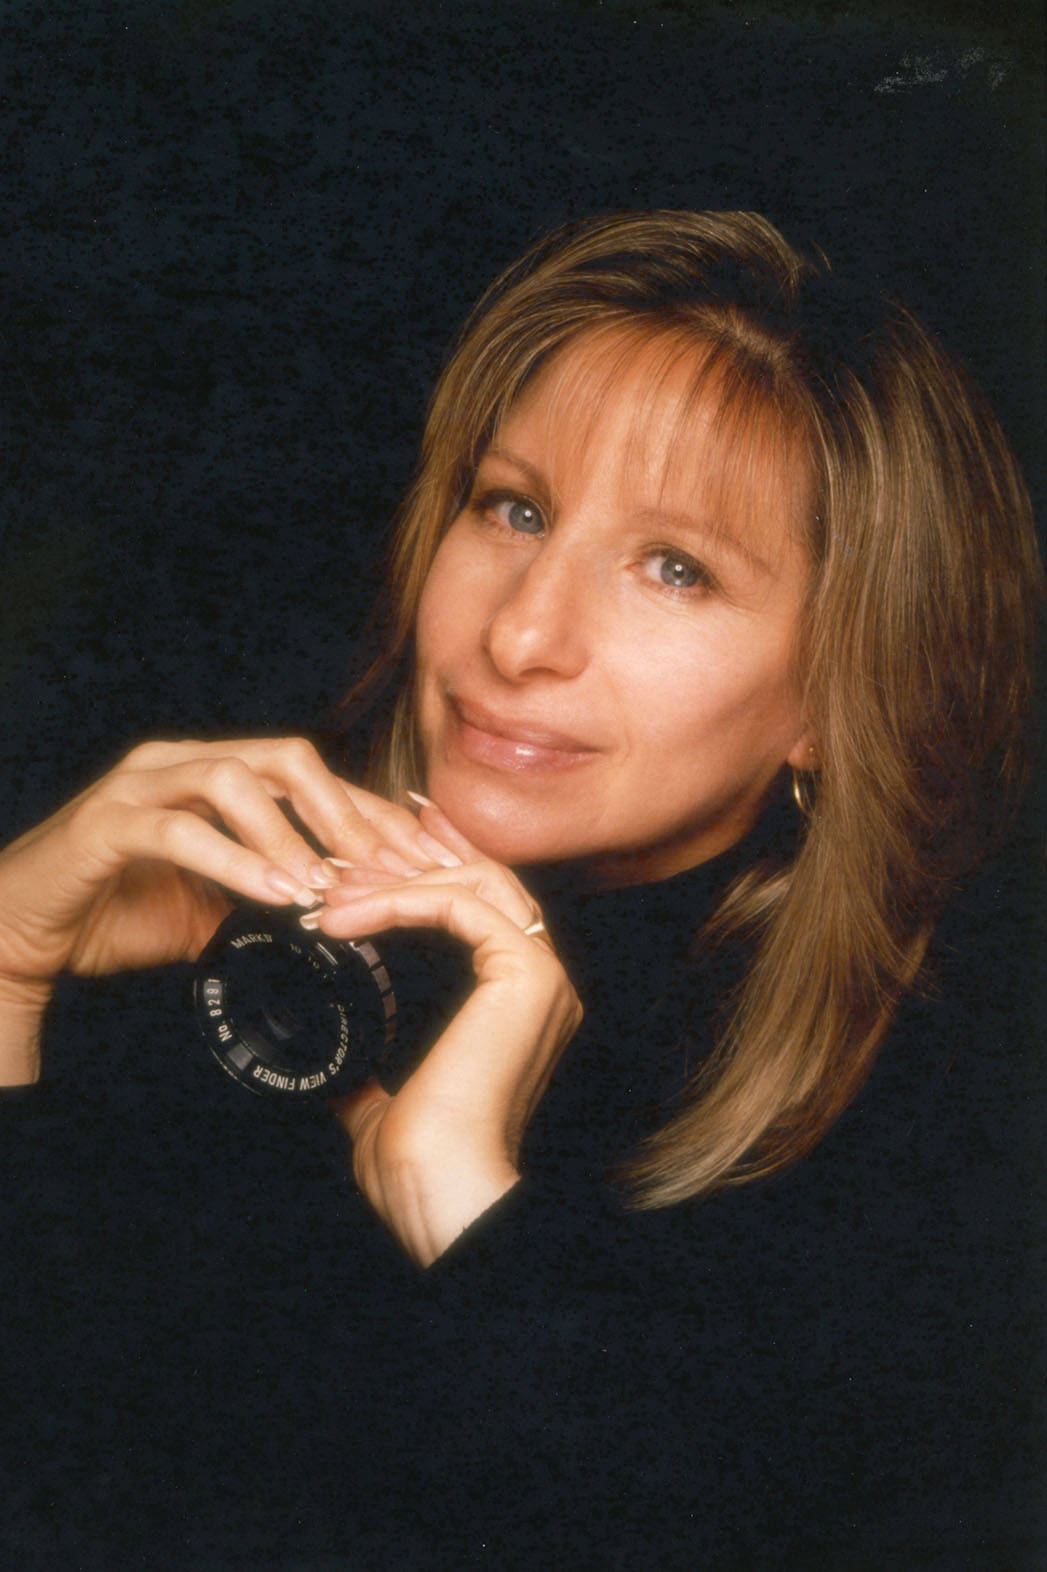 Iconic singer Barbra Streisand on The Movie Album cover Wallpaper